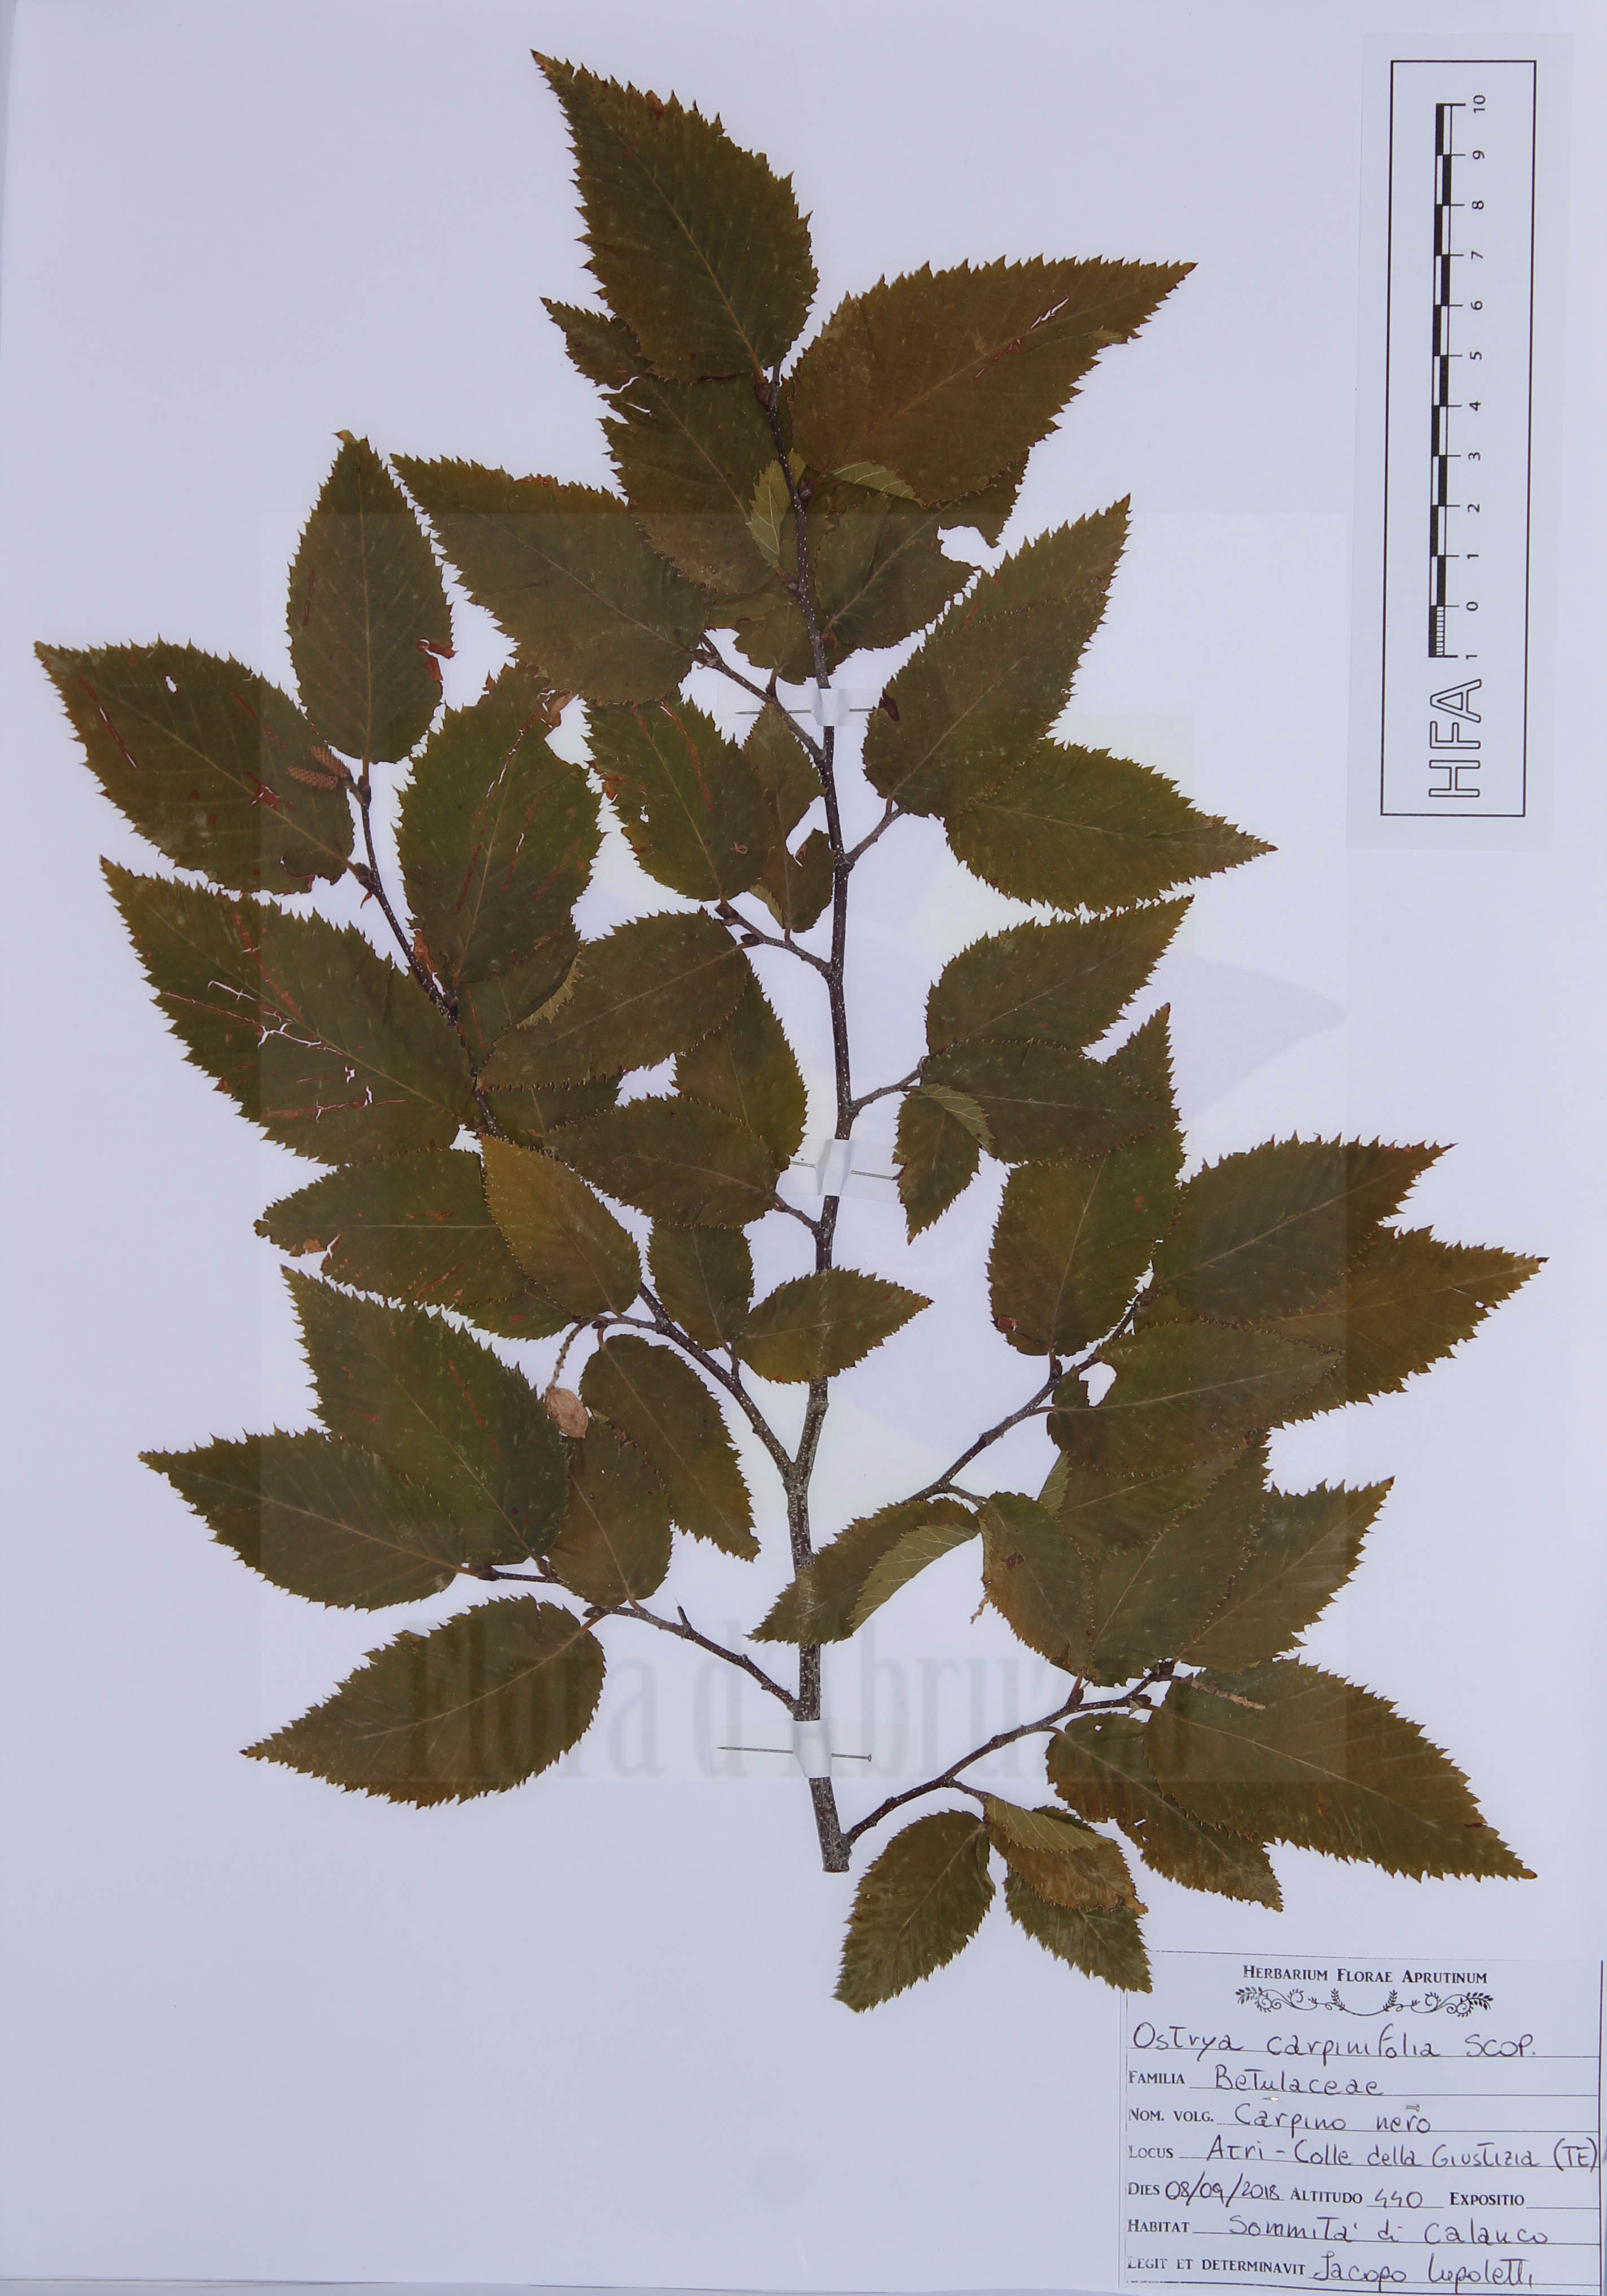 Ostrya carpinifolia Scop.